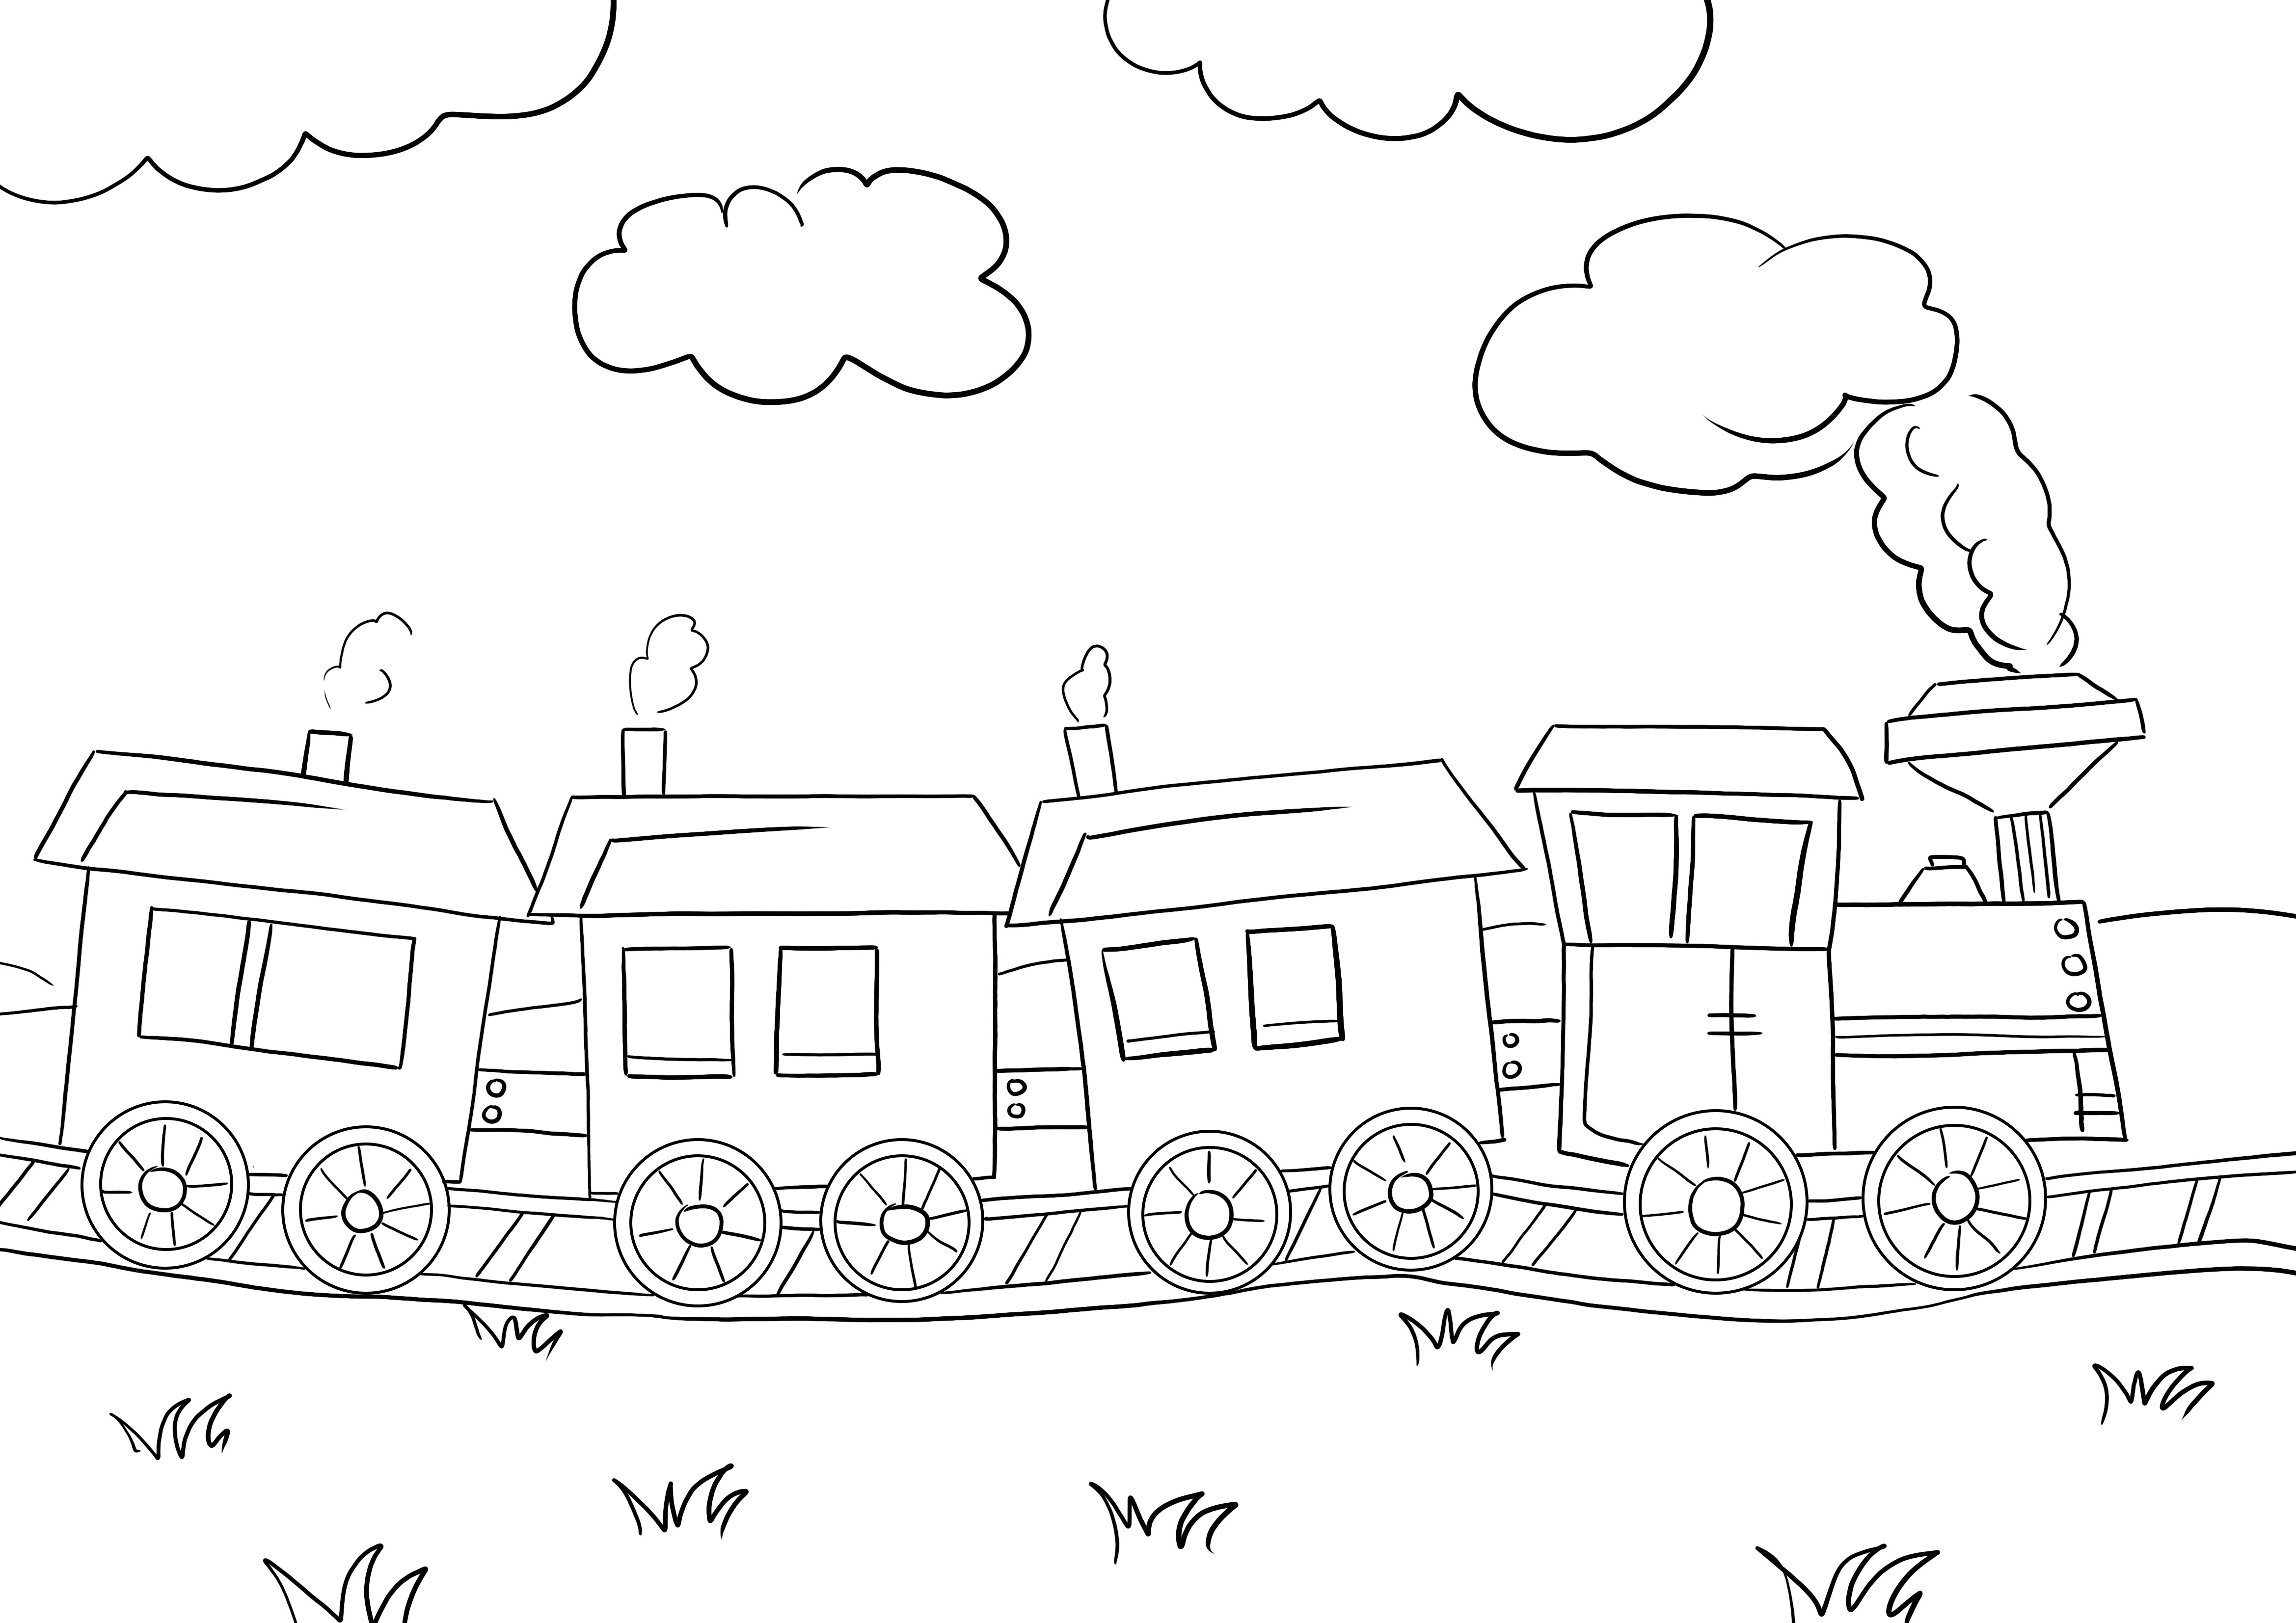 Impressão gratuita de um trem veloz para as crianças colorirem e aprenderem com diversão